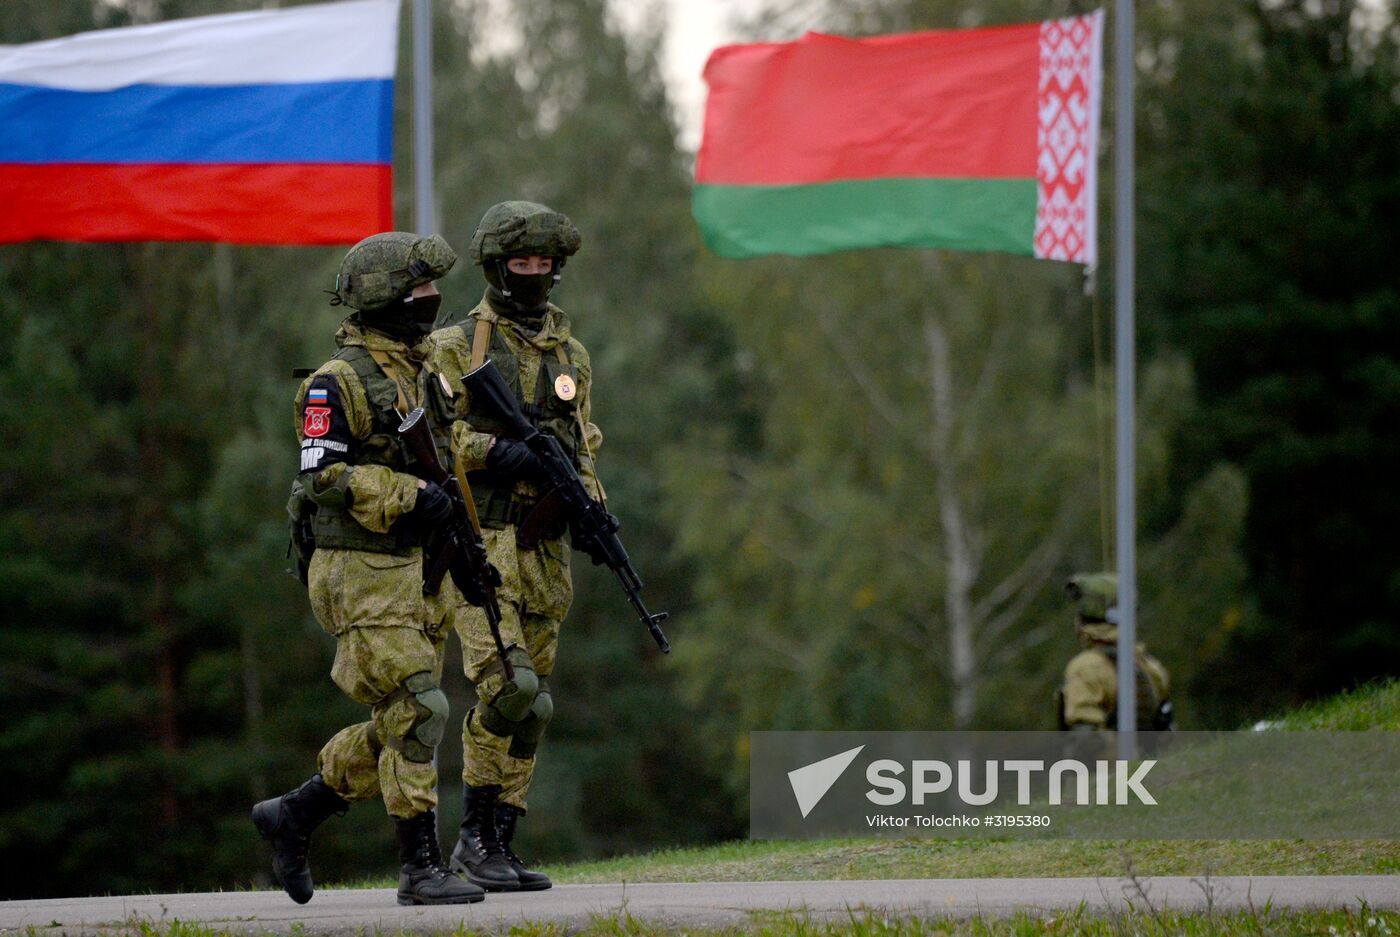 Zapad-2017 Russian-Belarusian exercises in Belarus